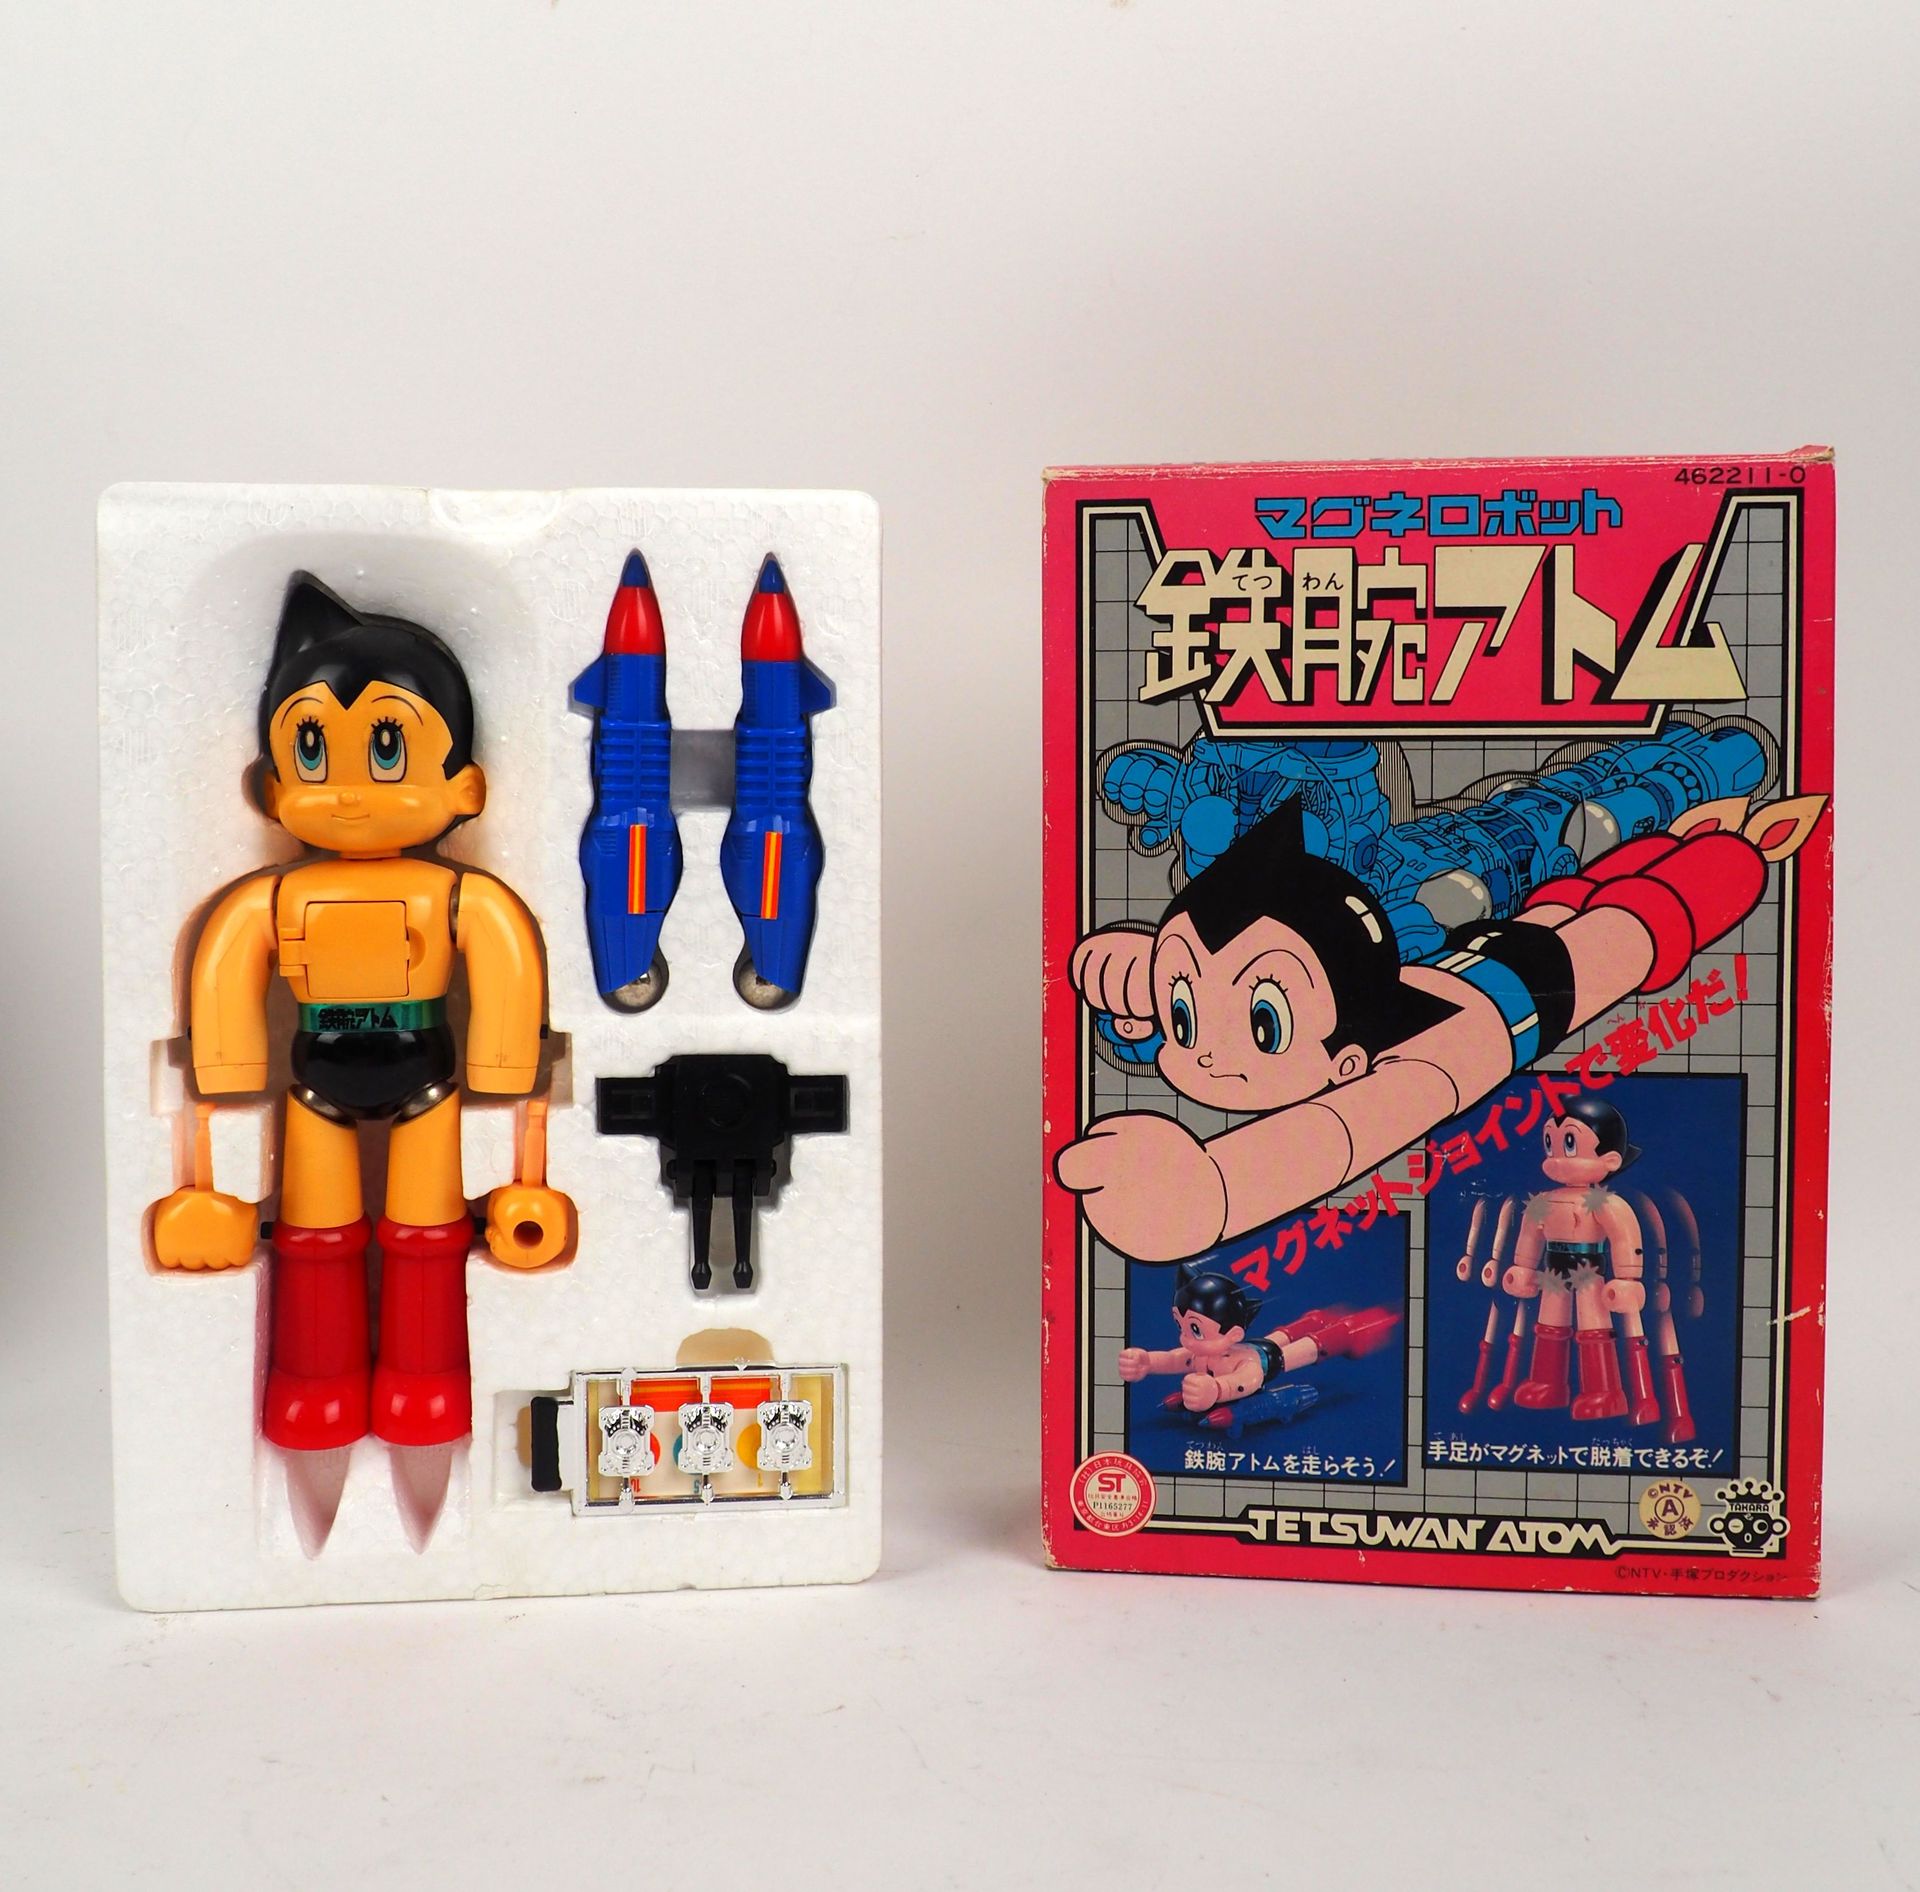 Null GIAPPONE TEZUKA
Astro
Astro giocattolo che si trasforma in un razzo Astro e&hellip;